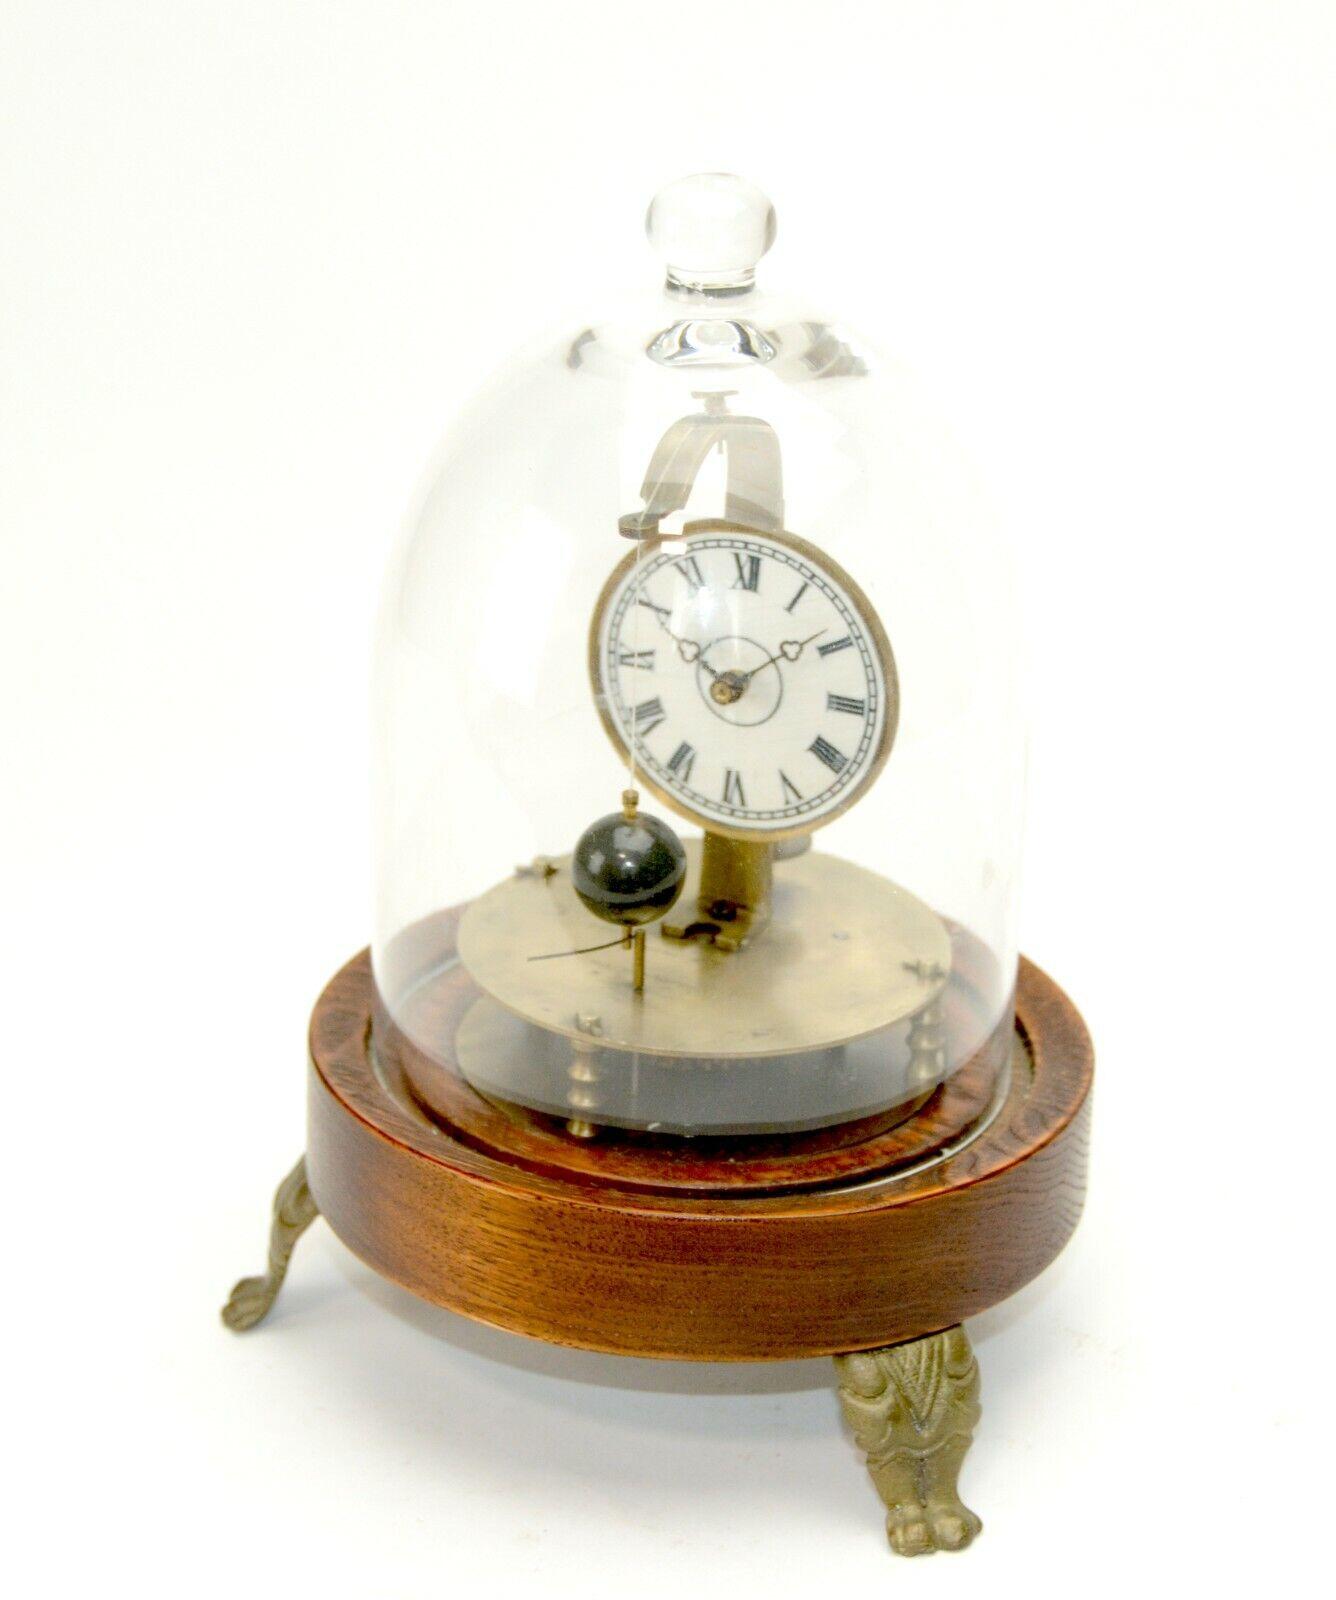 Mystery Briggs Rotary Glaskuppel fliegende Kugel Uhr.

Wir präsentieren eine hervorragende 